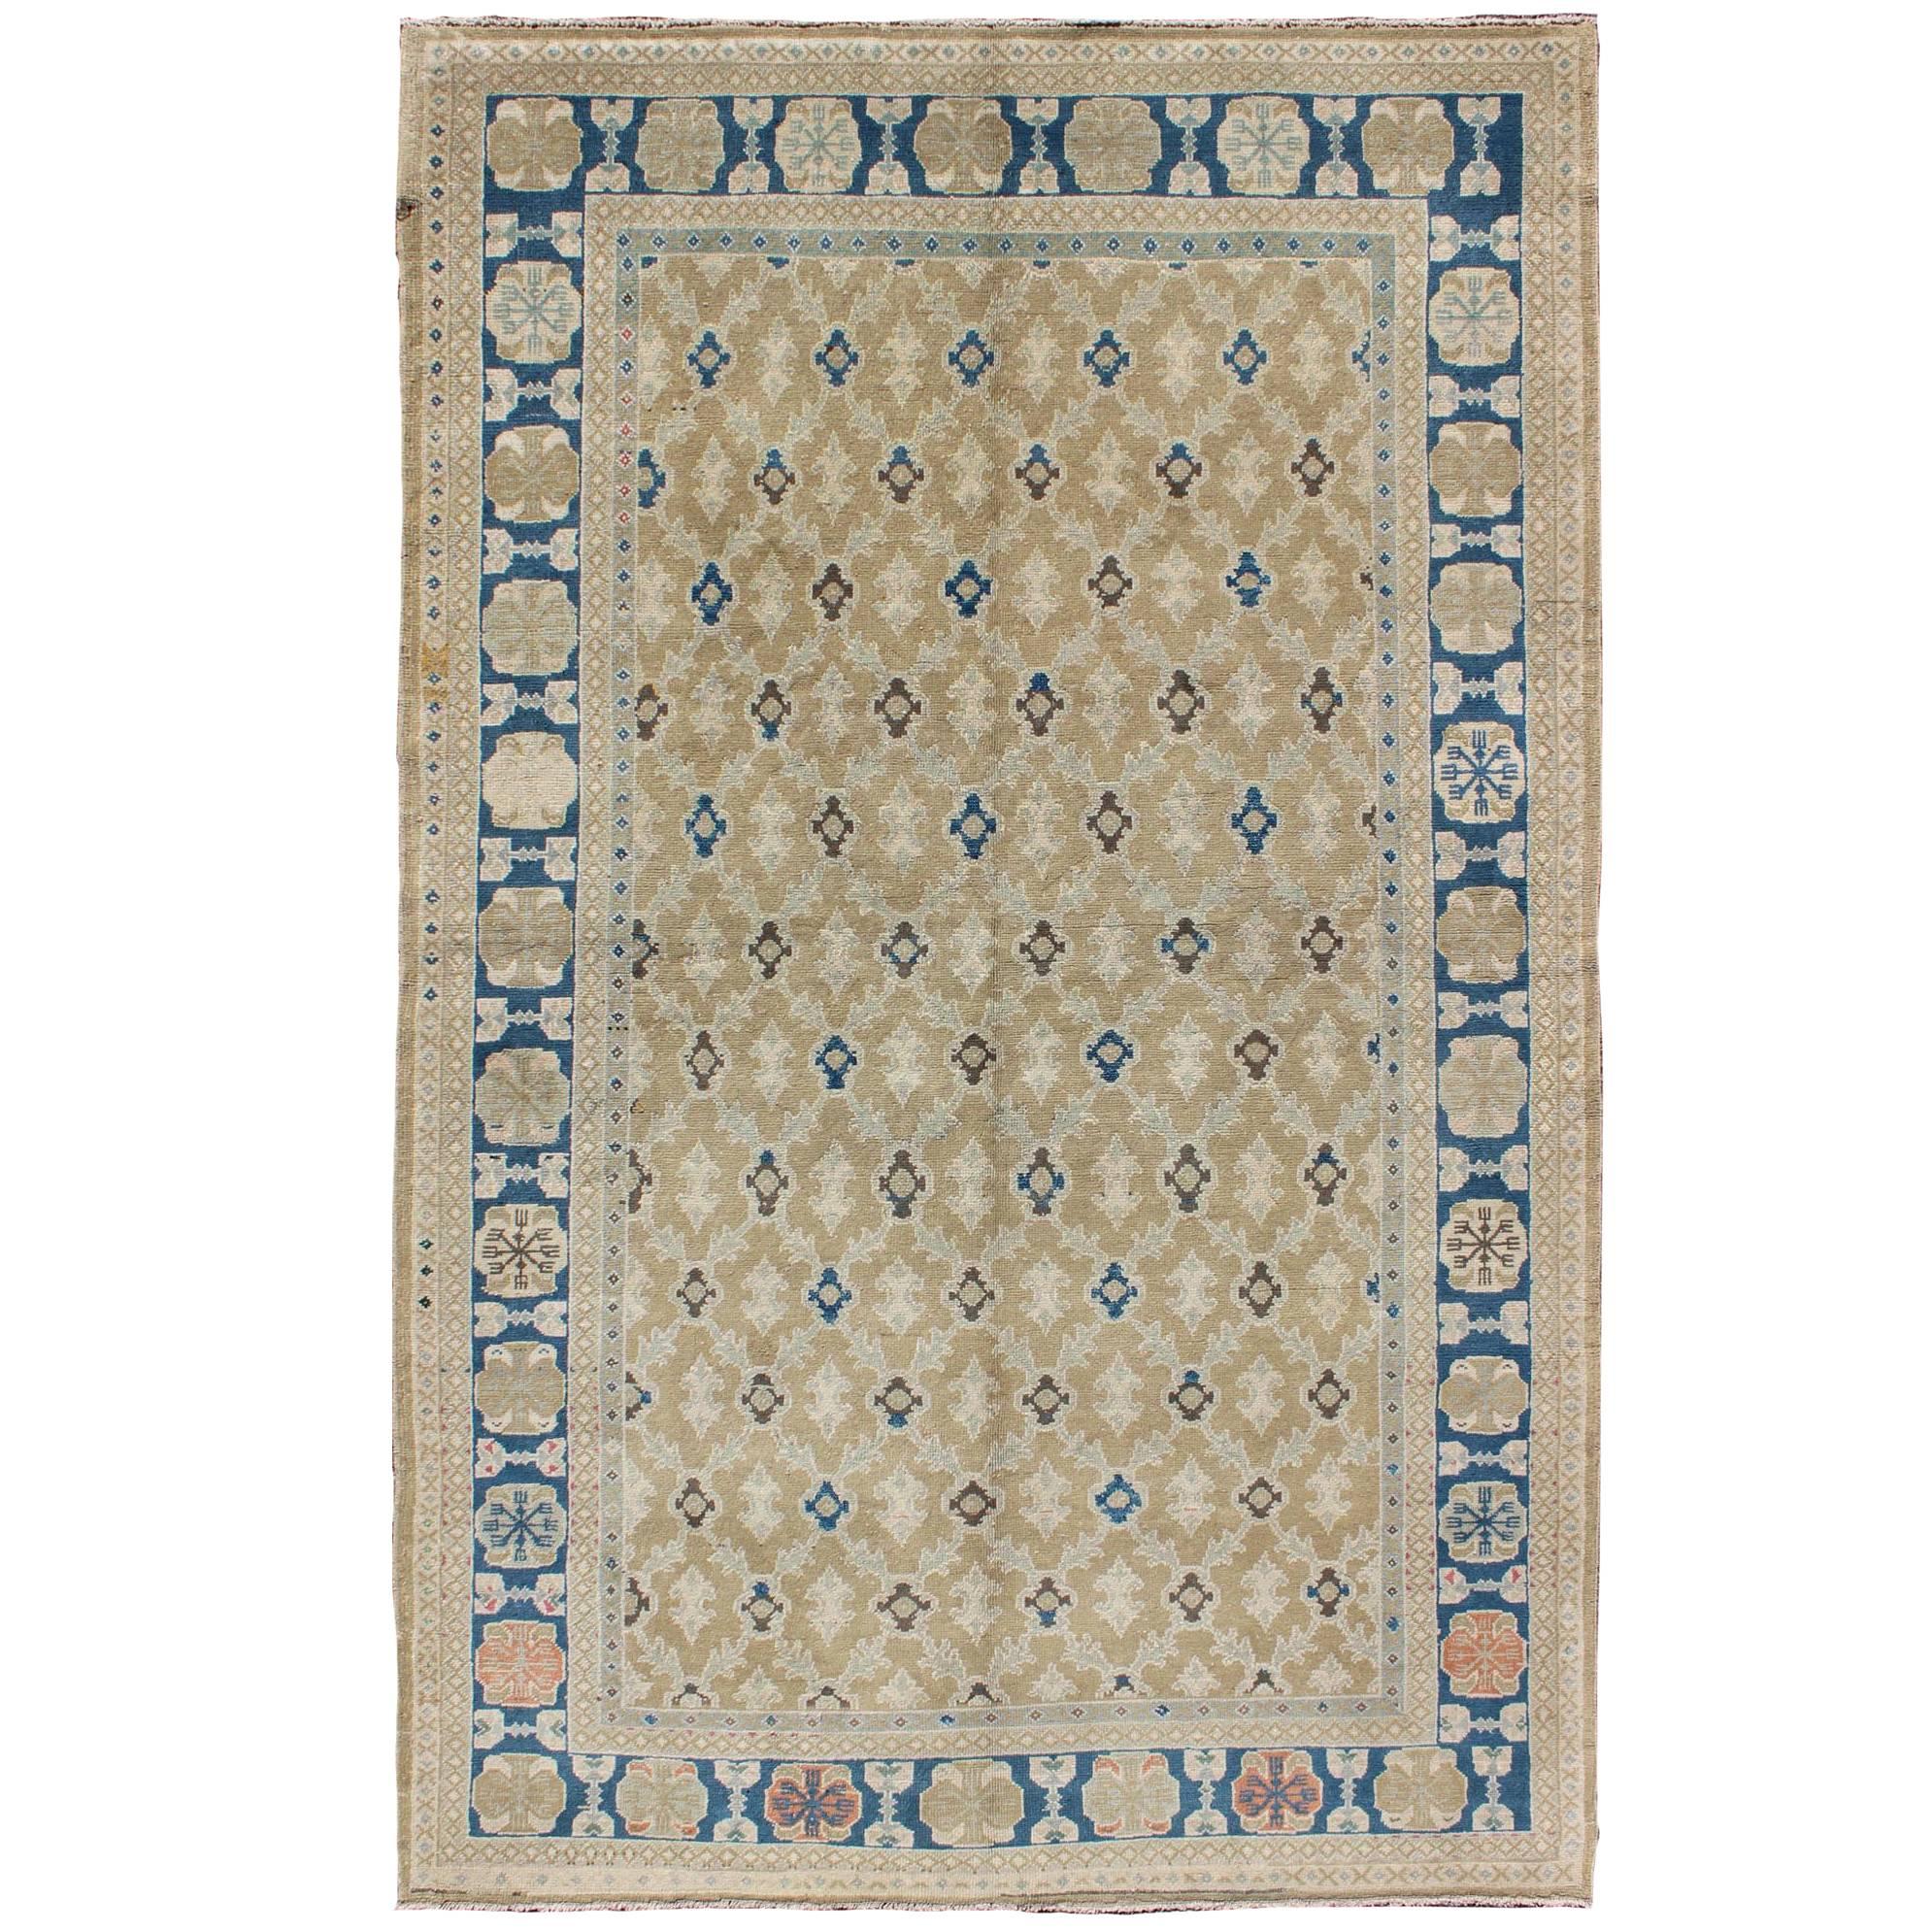 Tapis turc Sivas raffiné à motifs géométriques dans les tons brun, taupe, bleu et brun